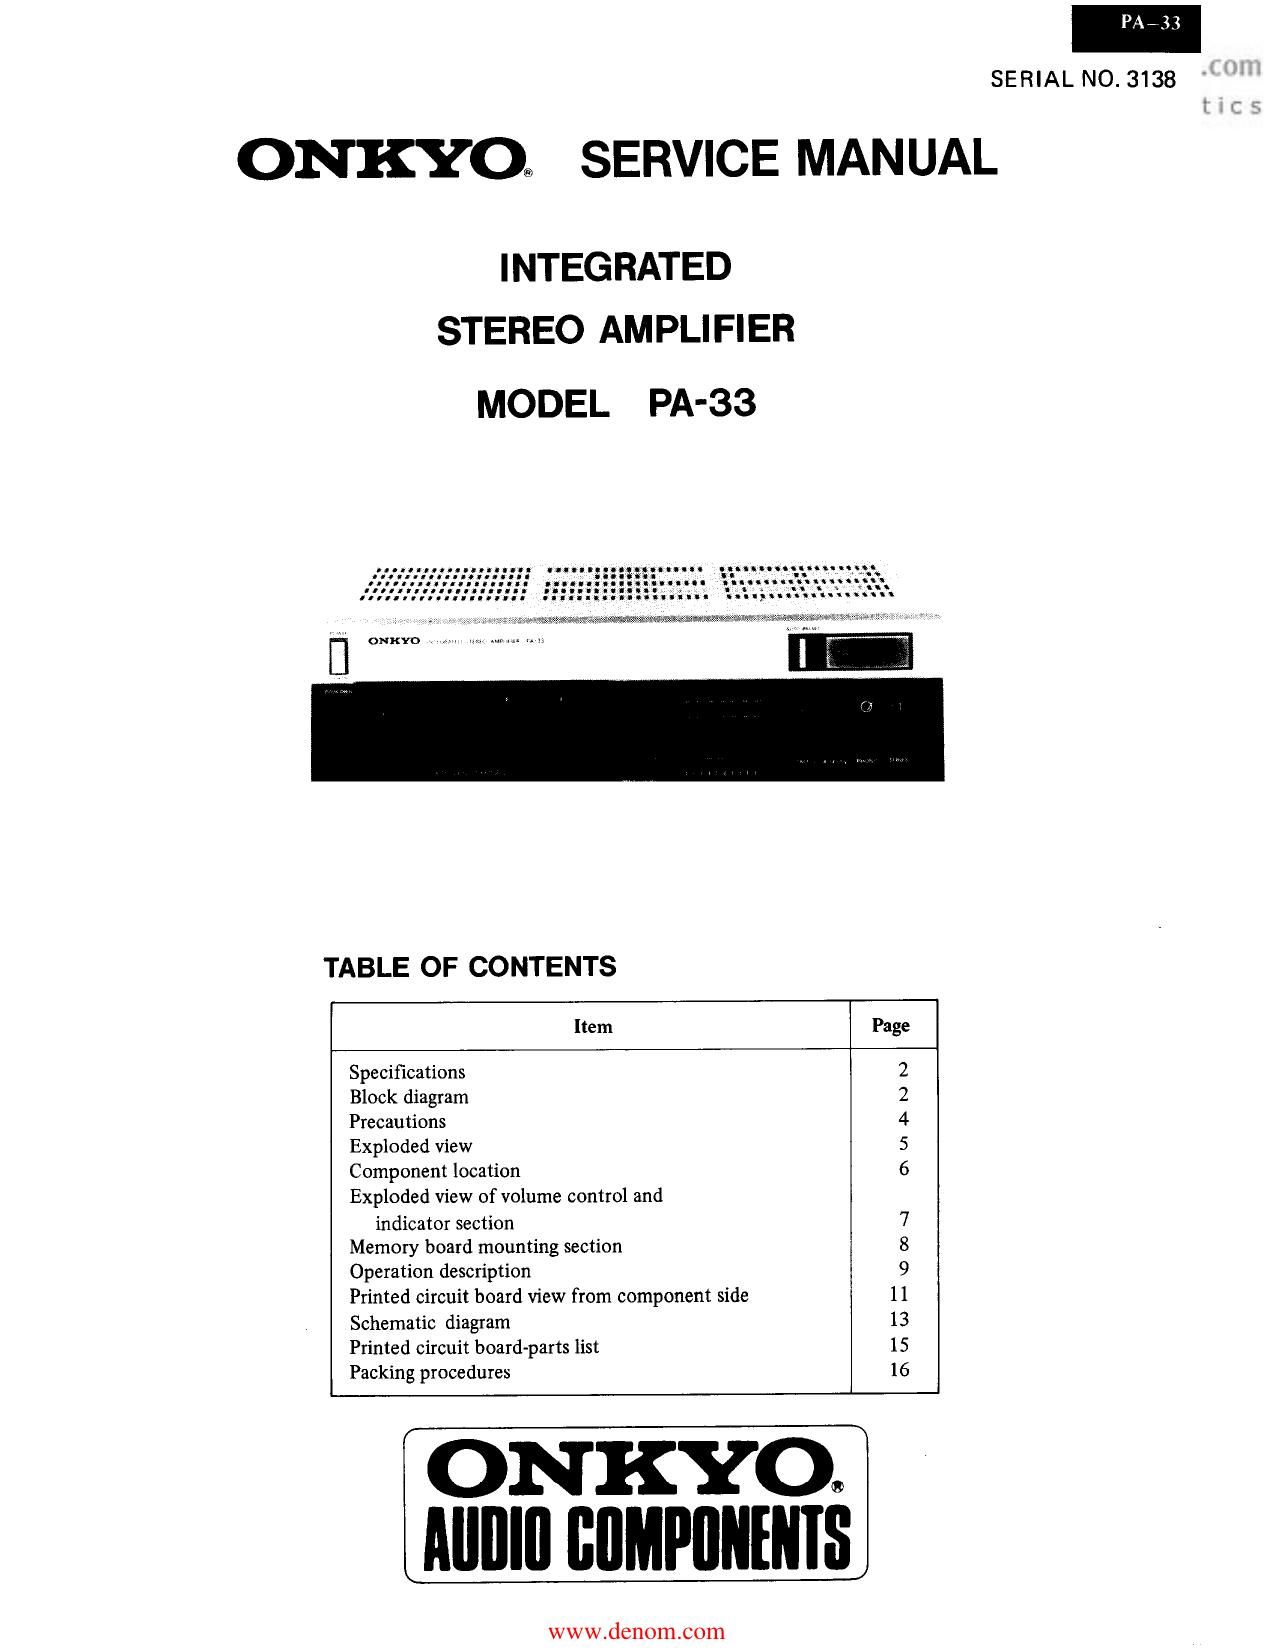 Onkyo PA 33 Service Manual